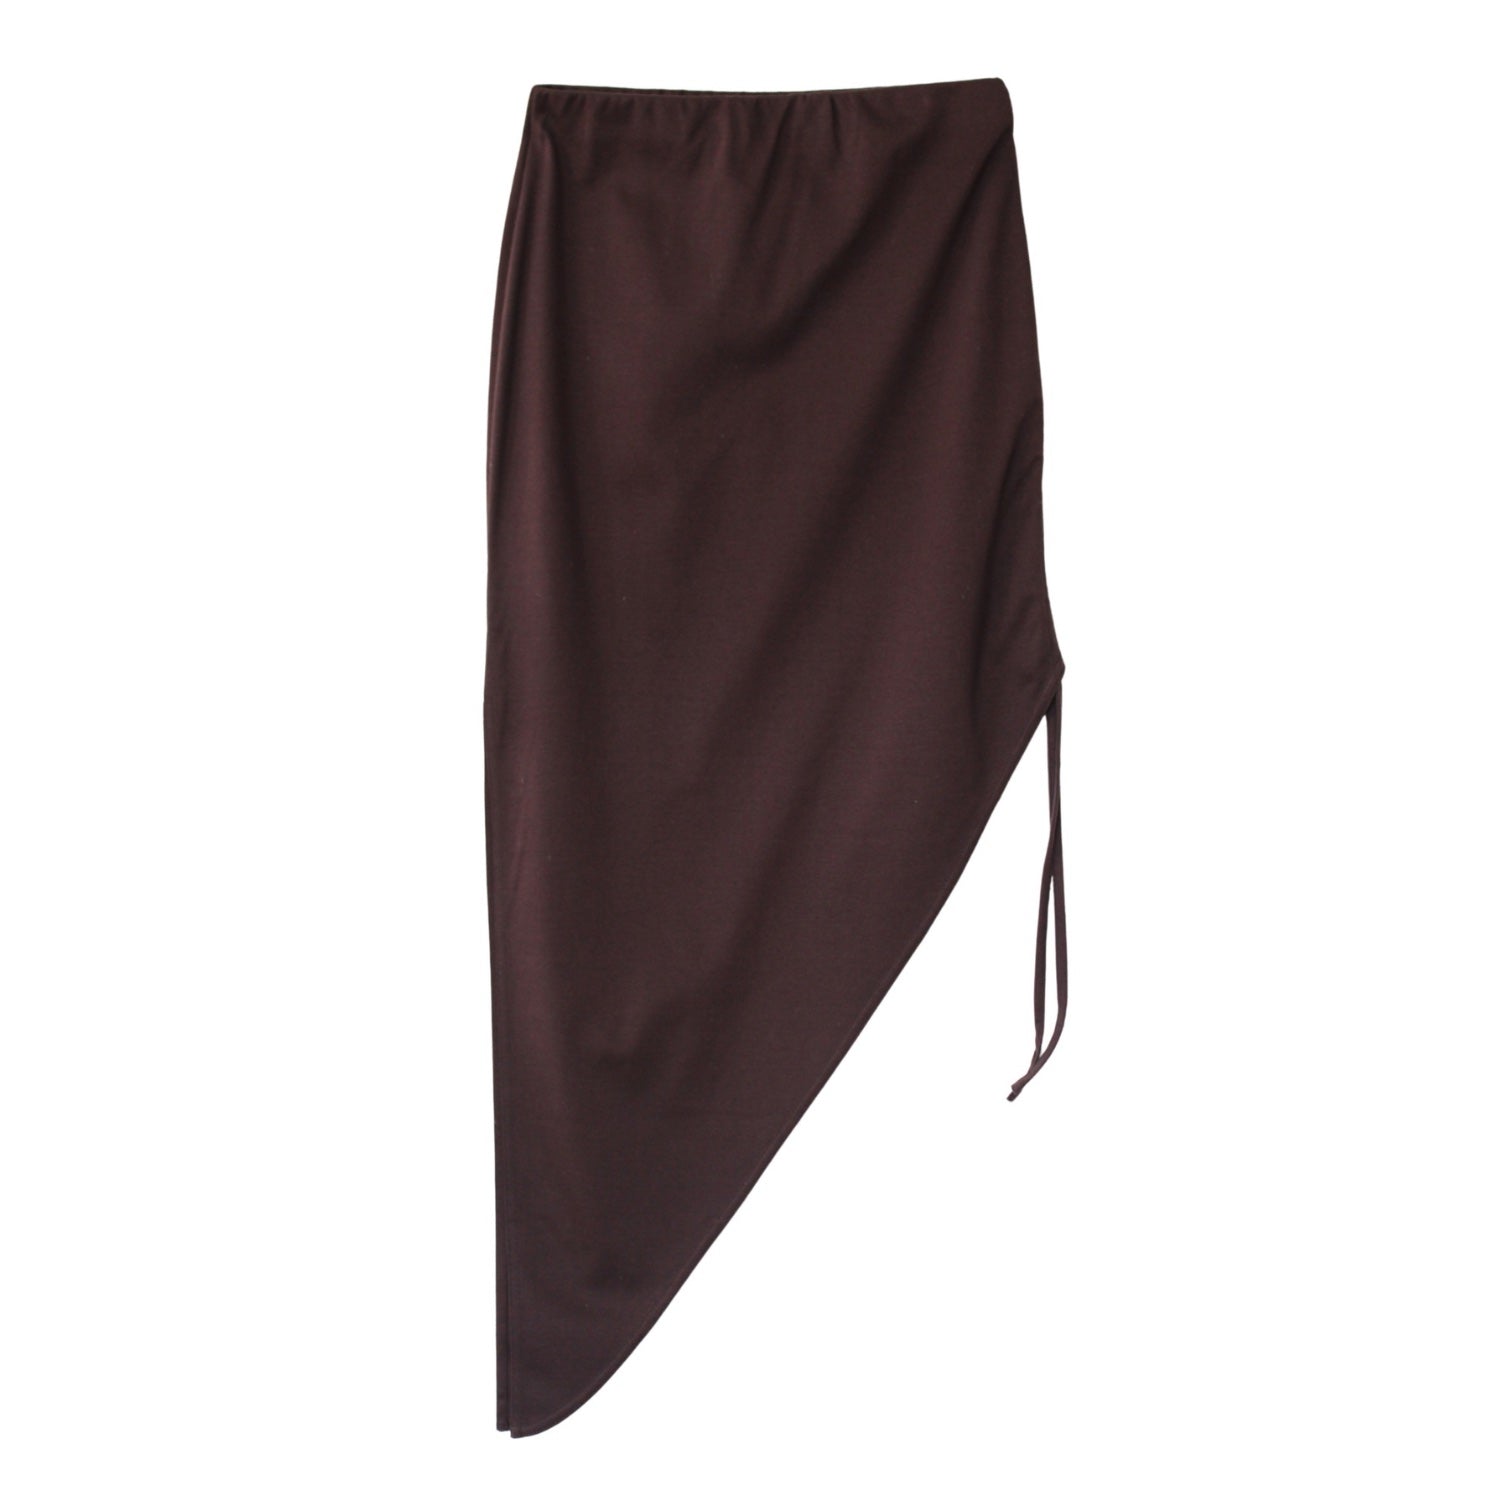 MNK ATELIER - Brown Adjustable Skirt, buy at DOORS NYC